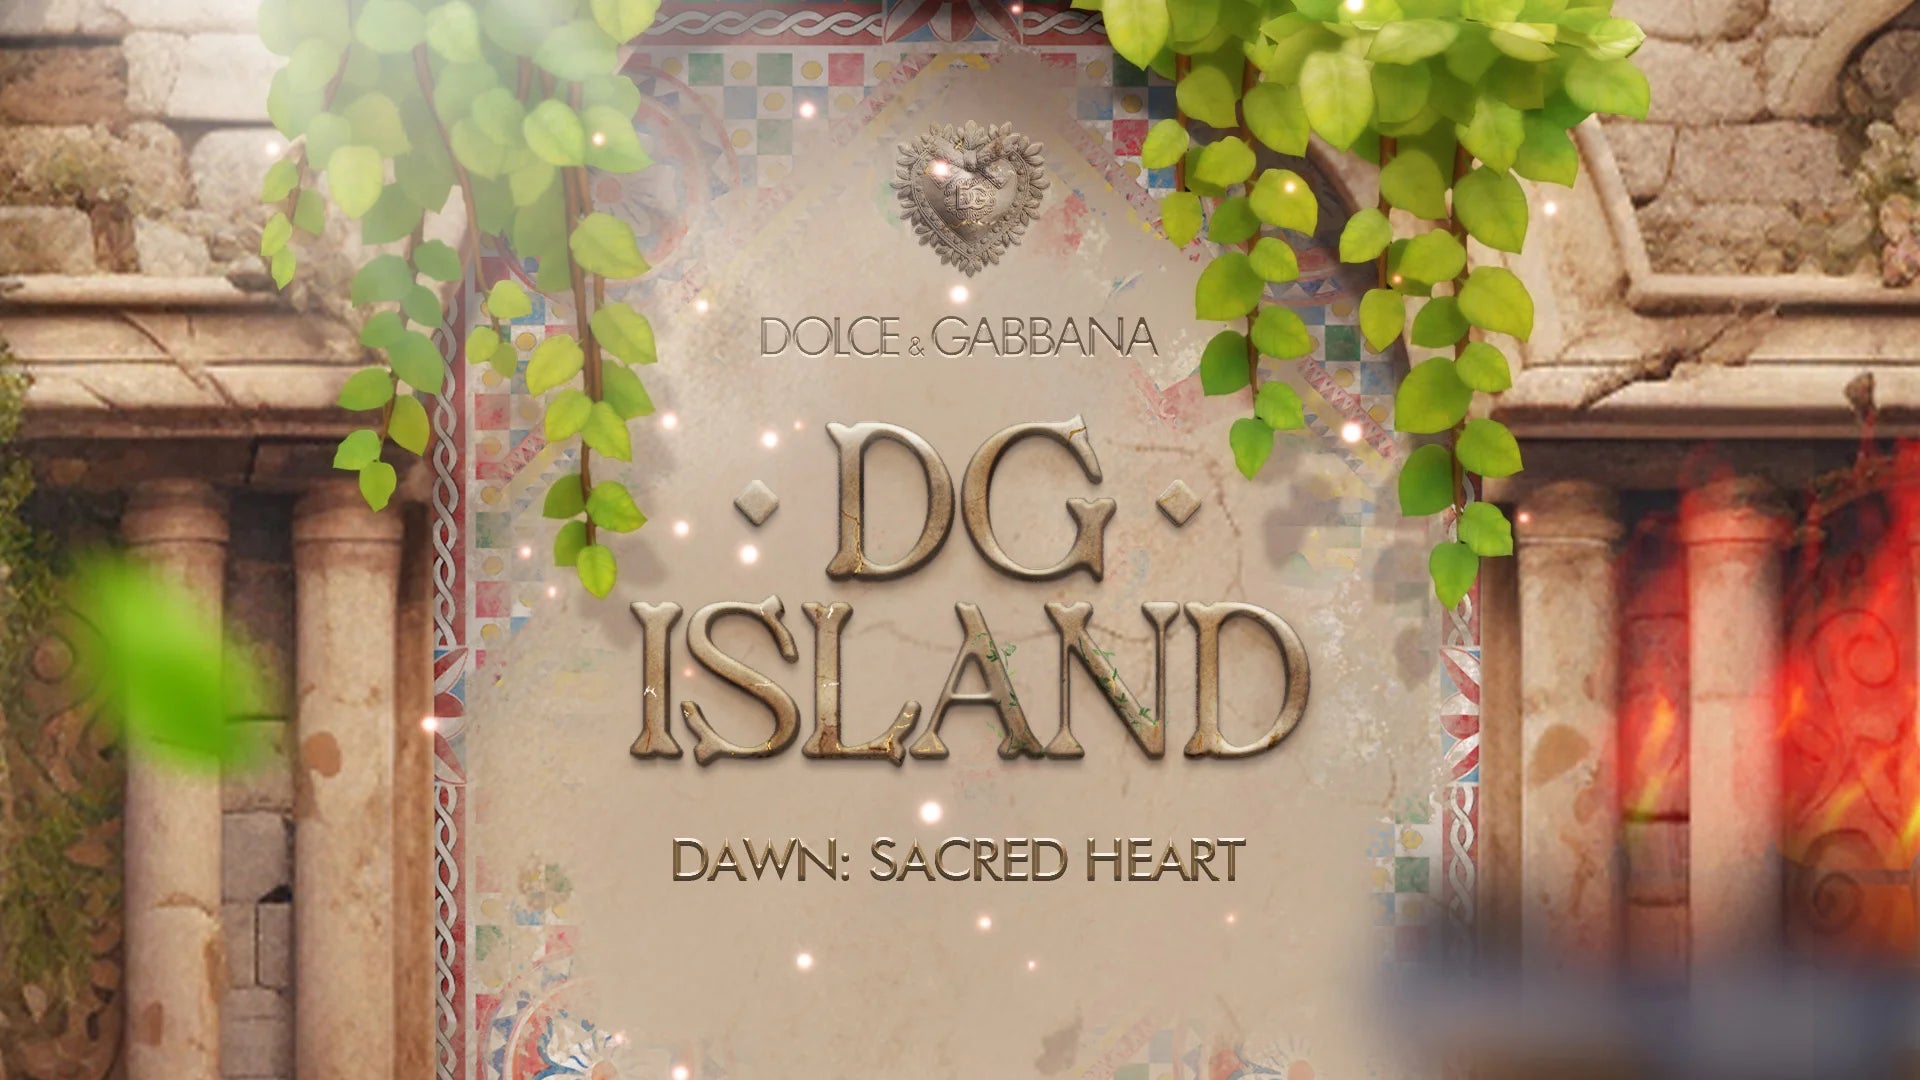 Dolce&Gabbana unveils DG Island